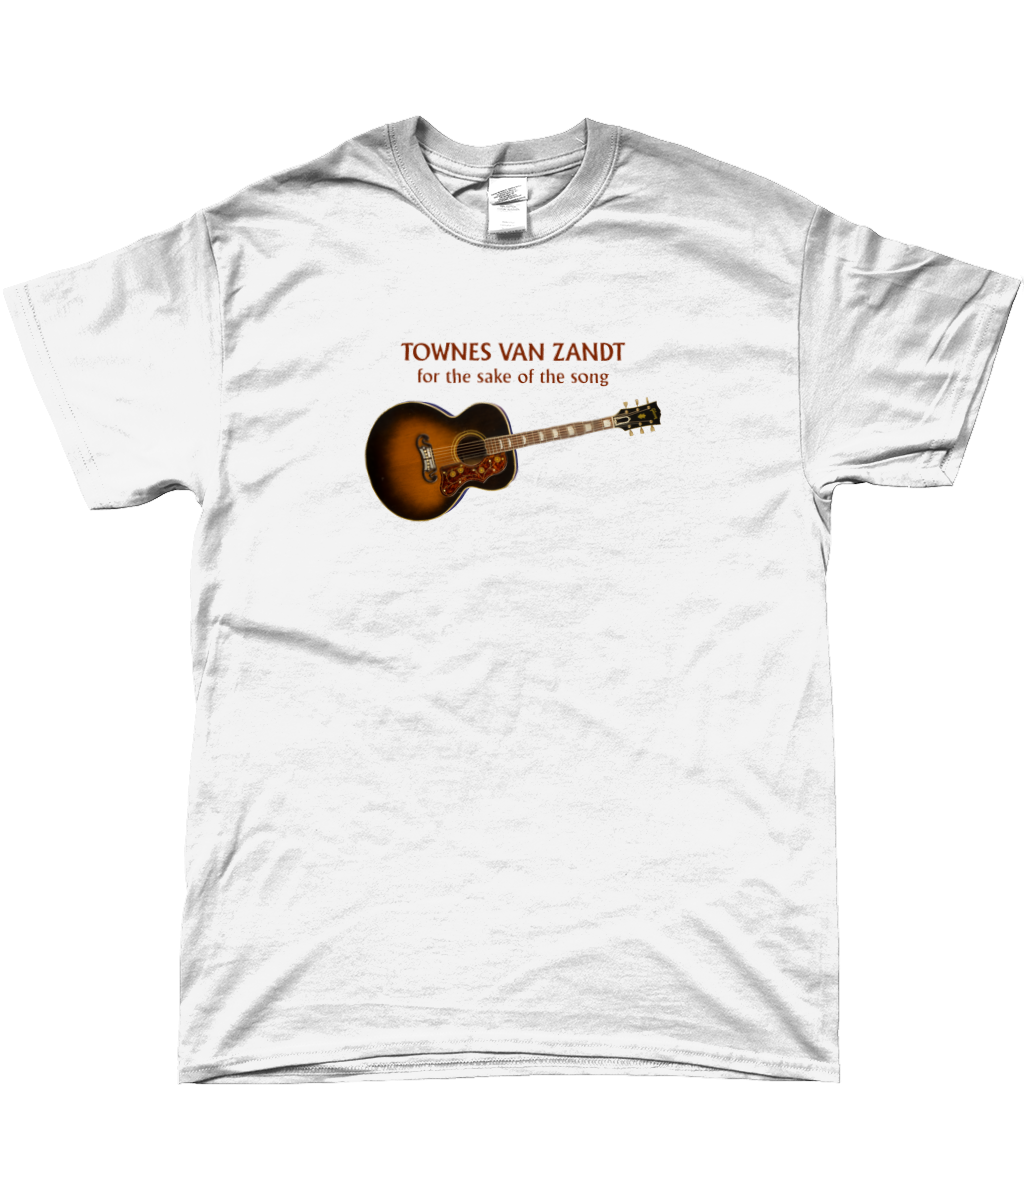 Townes Van Zandt t-shirt